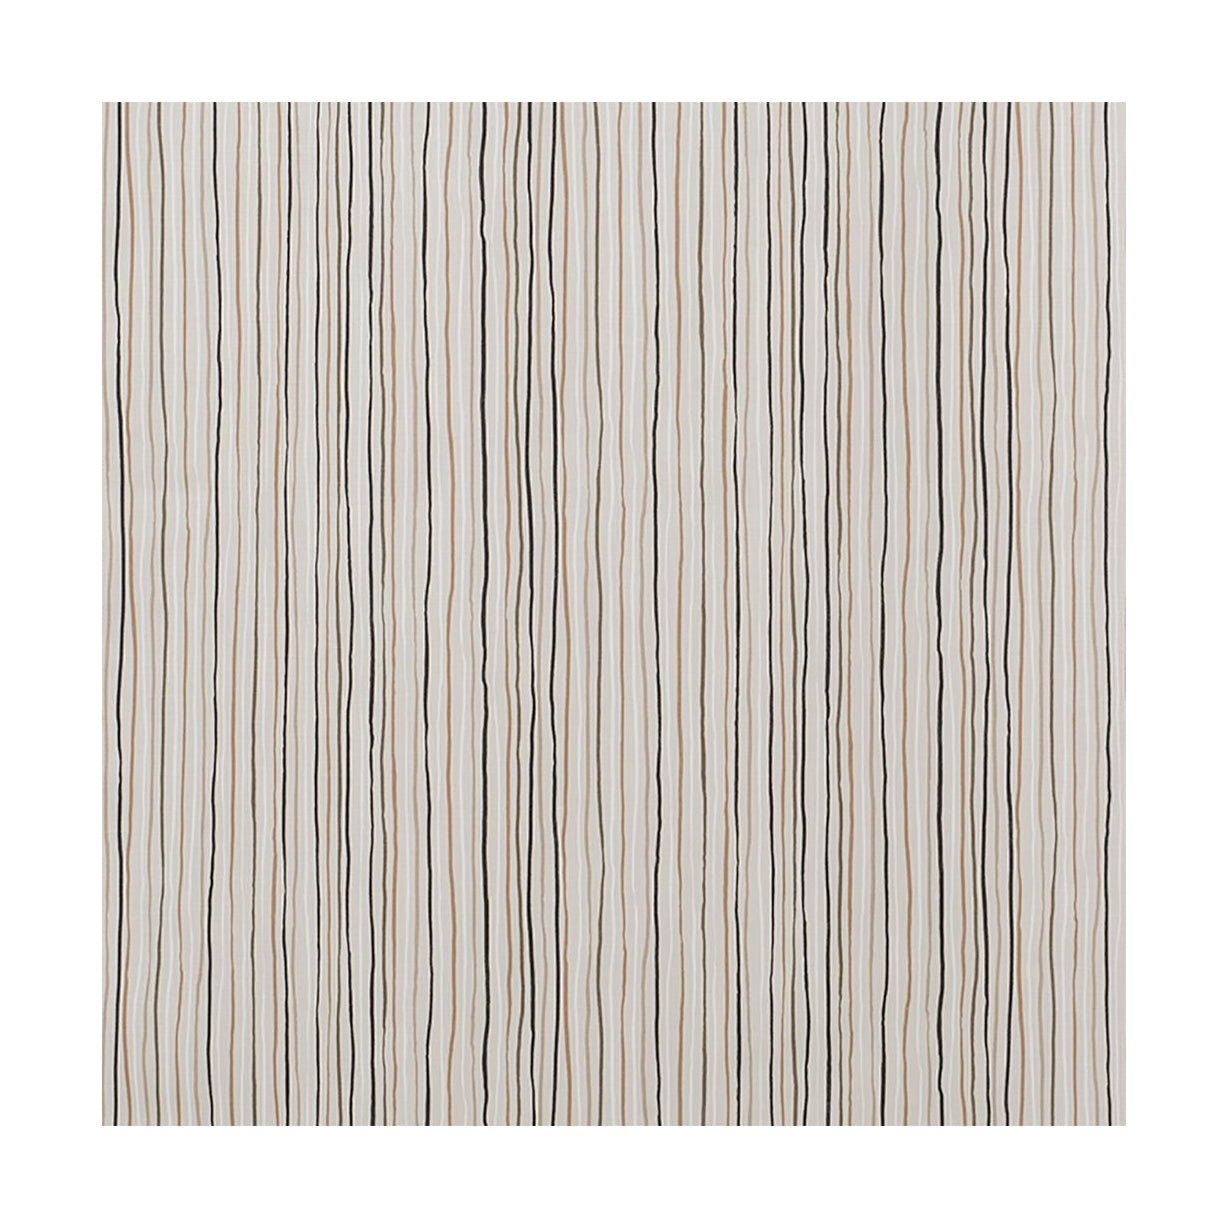 Spira Stripe Fabric Width 150 Cm (Price Per Meter), Multi Natural